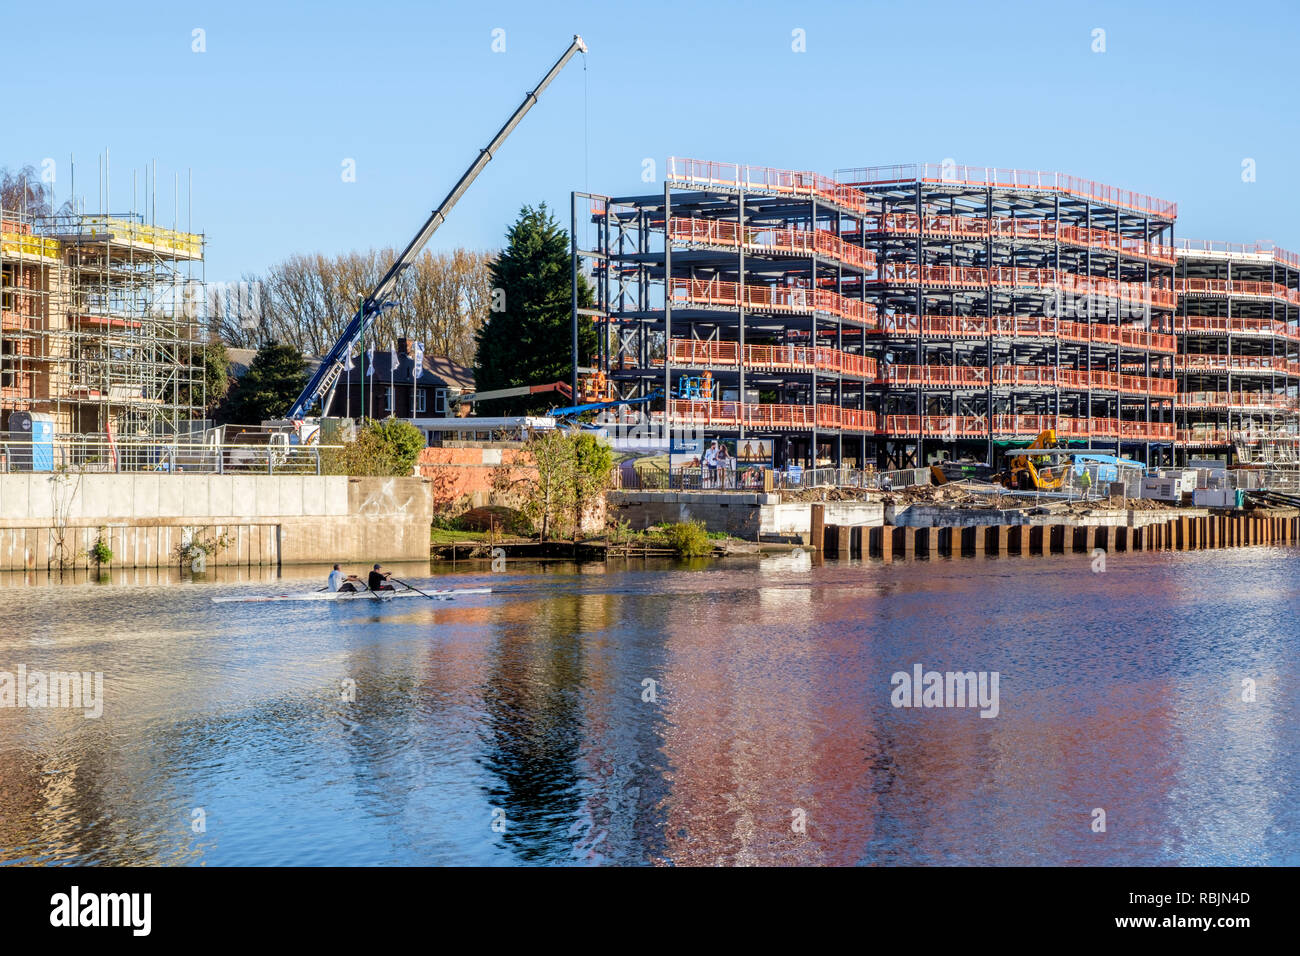 Riverside nuovi lavori di costruzione in corrispondenza di un sito in costruzione sul fiume Trent, Nottingham, Regno Unito Foto Stock